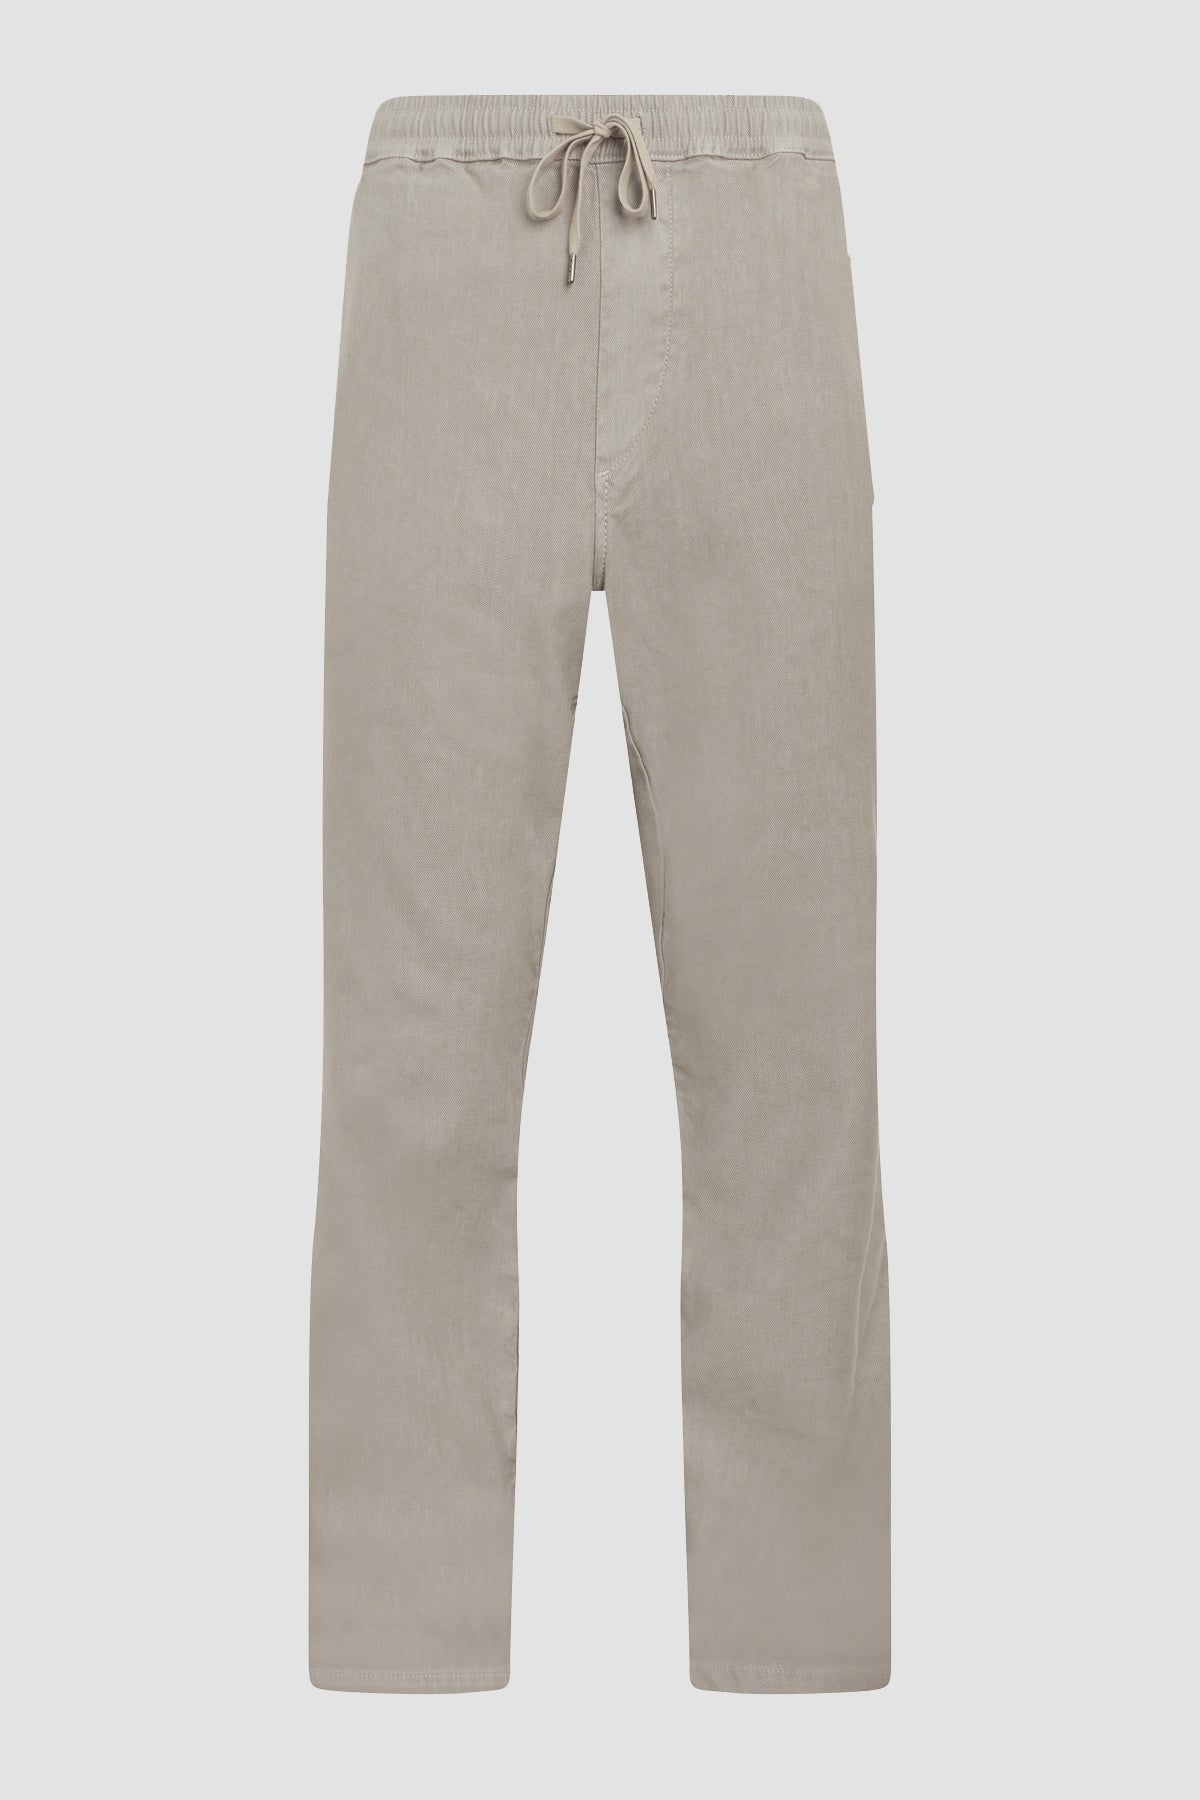 Linen Trouser, Premium Italian Fabric